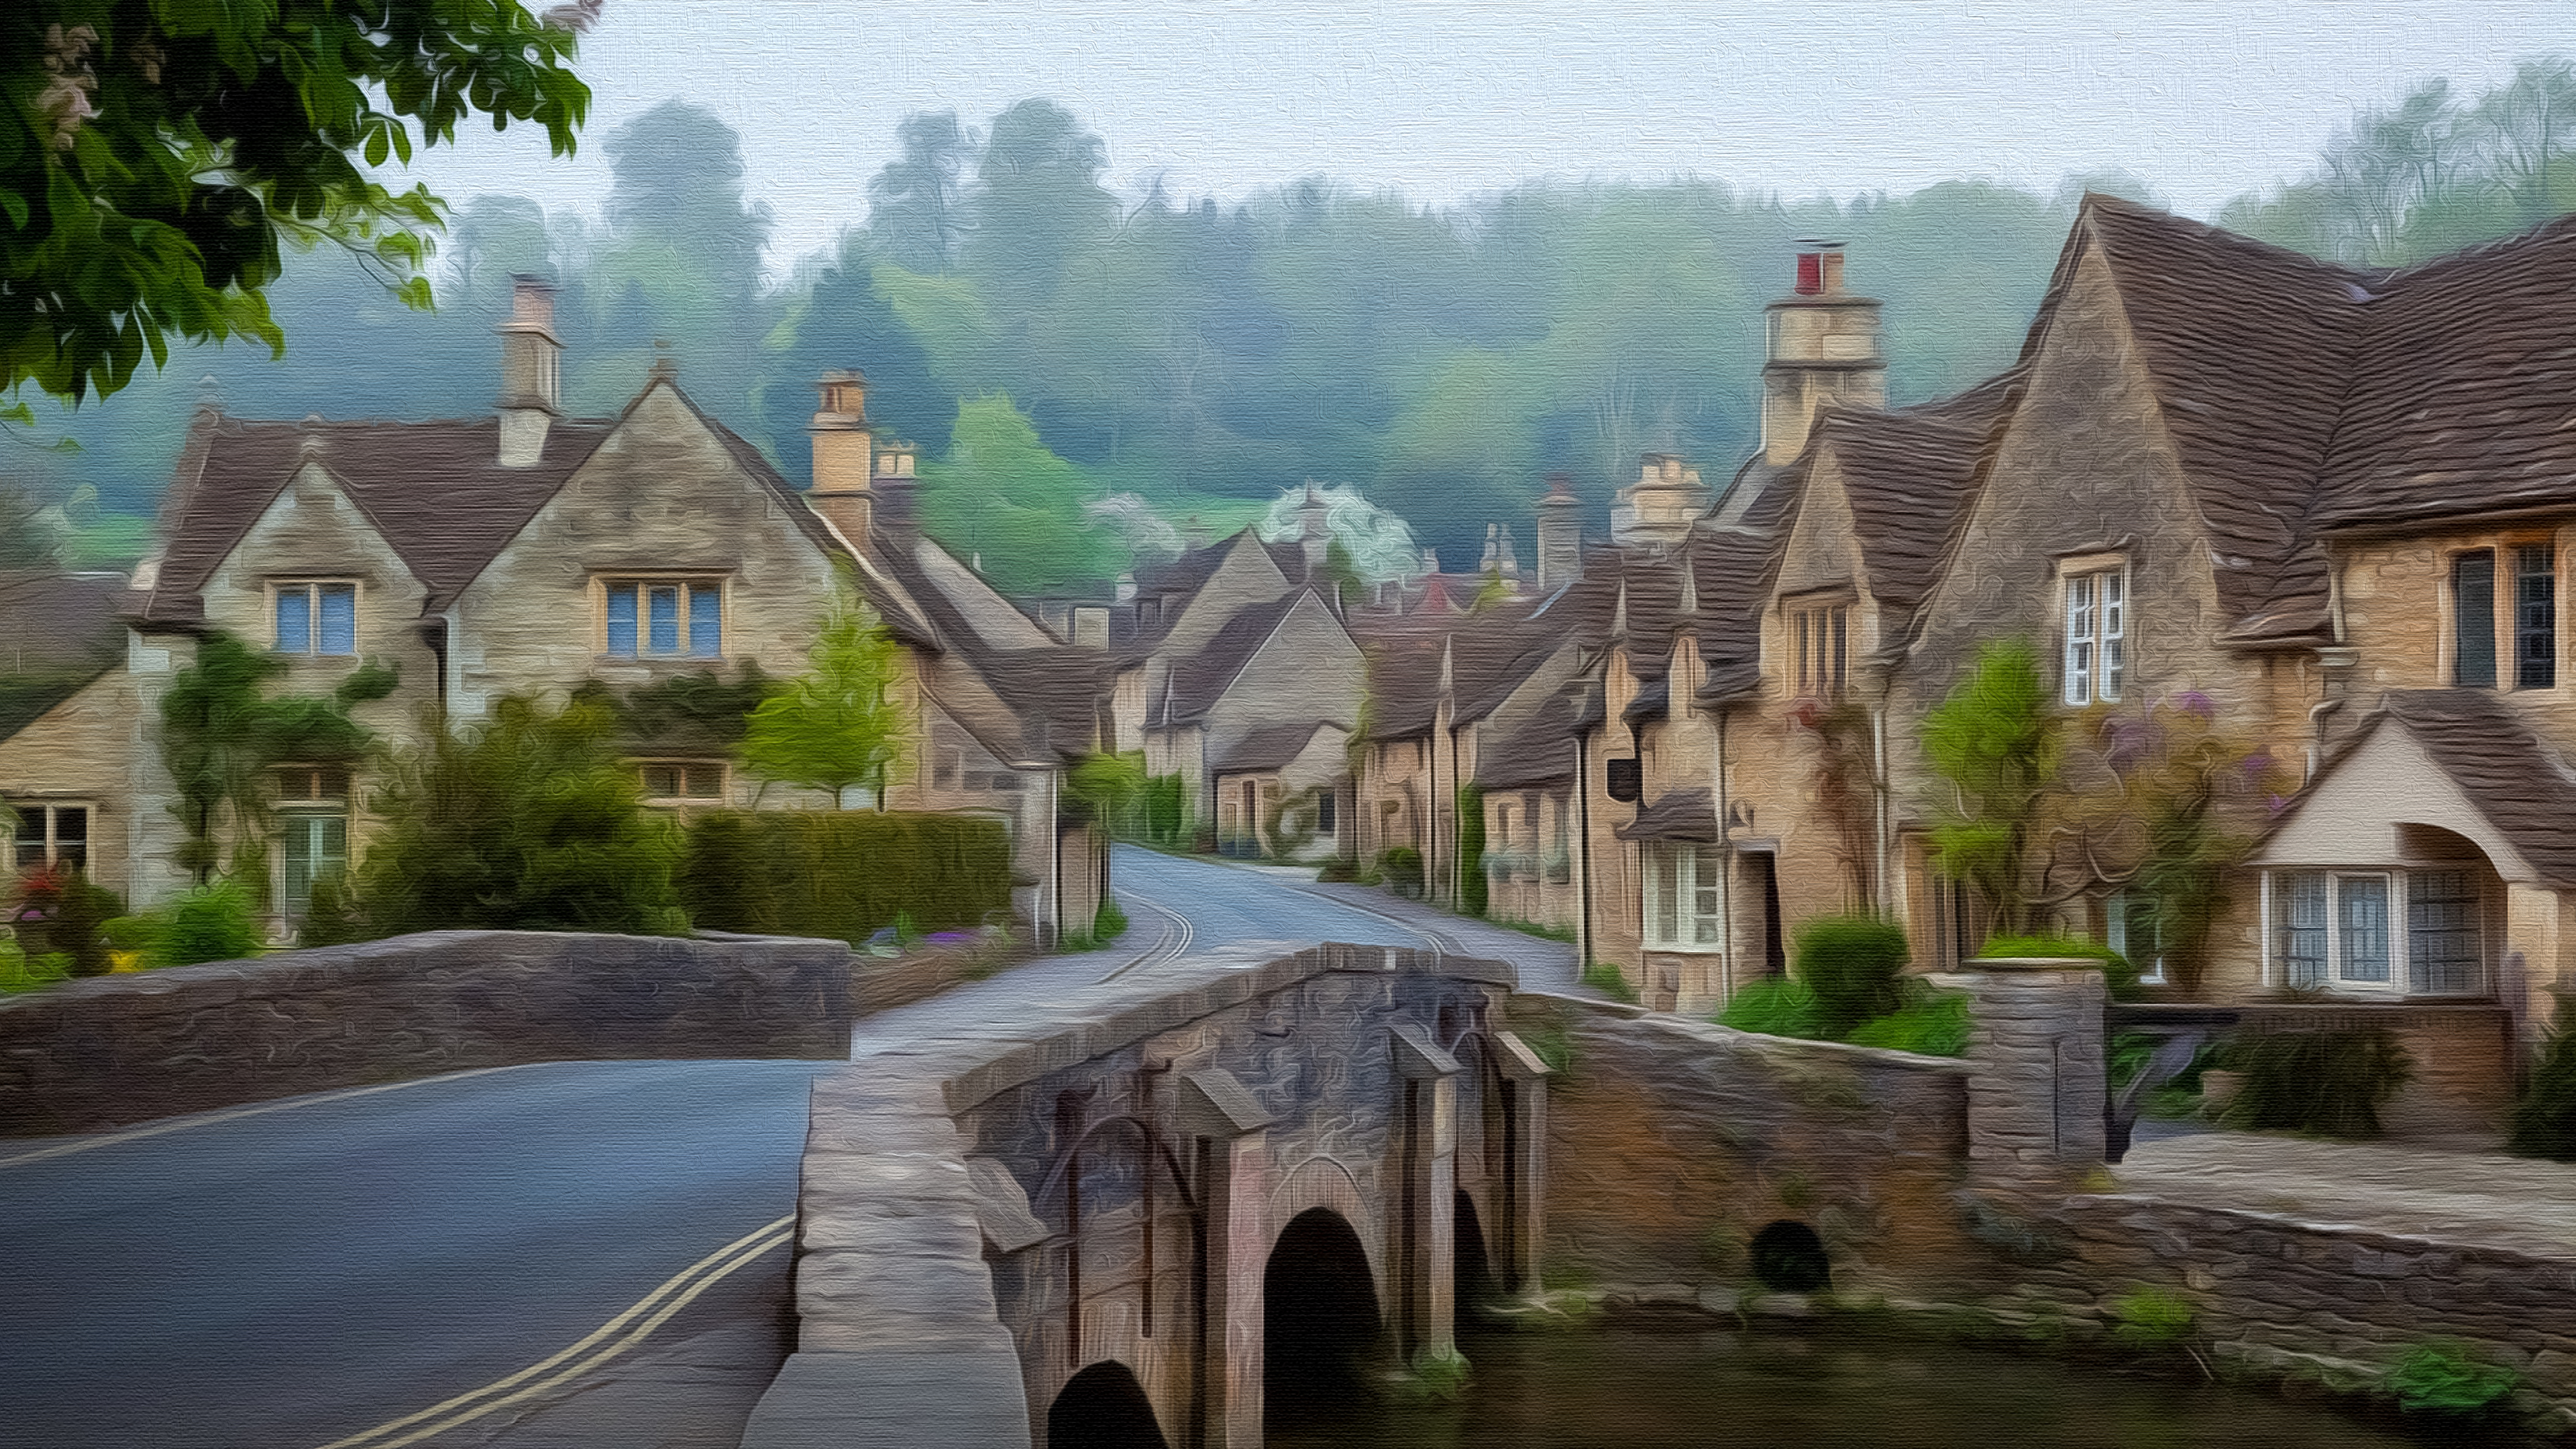 3840x2160 Cotswold Village, UK Fine Oil on Canvas by Manufan63